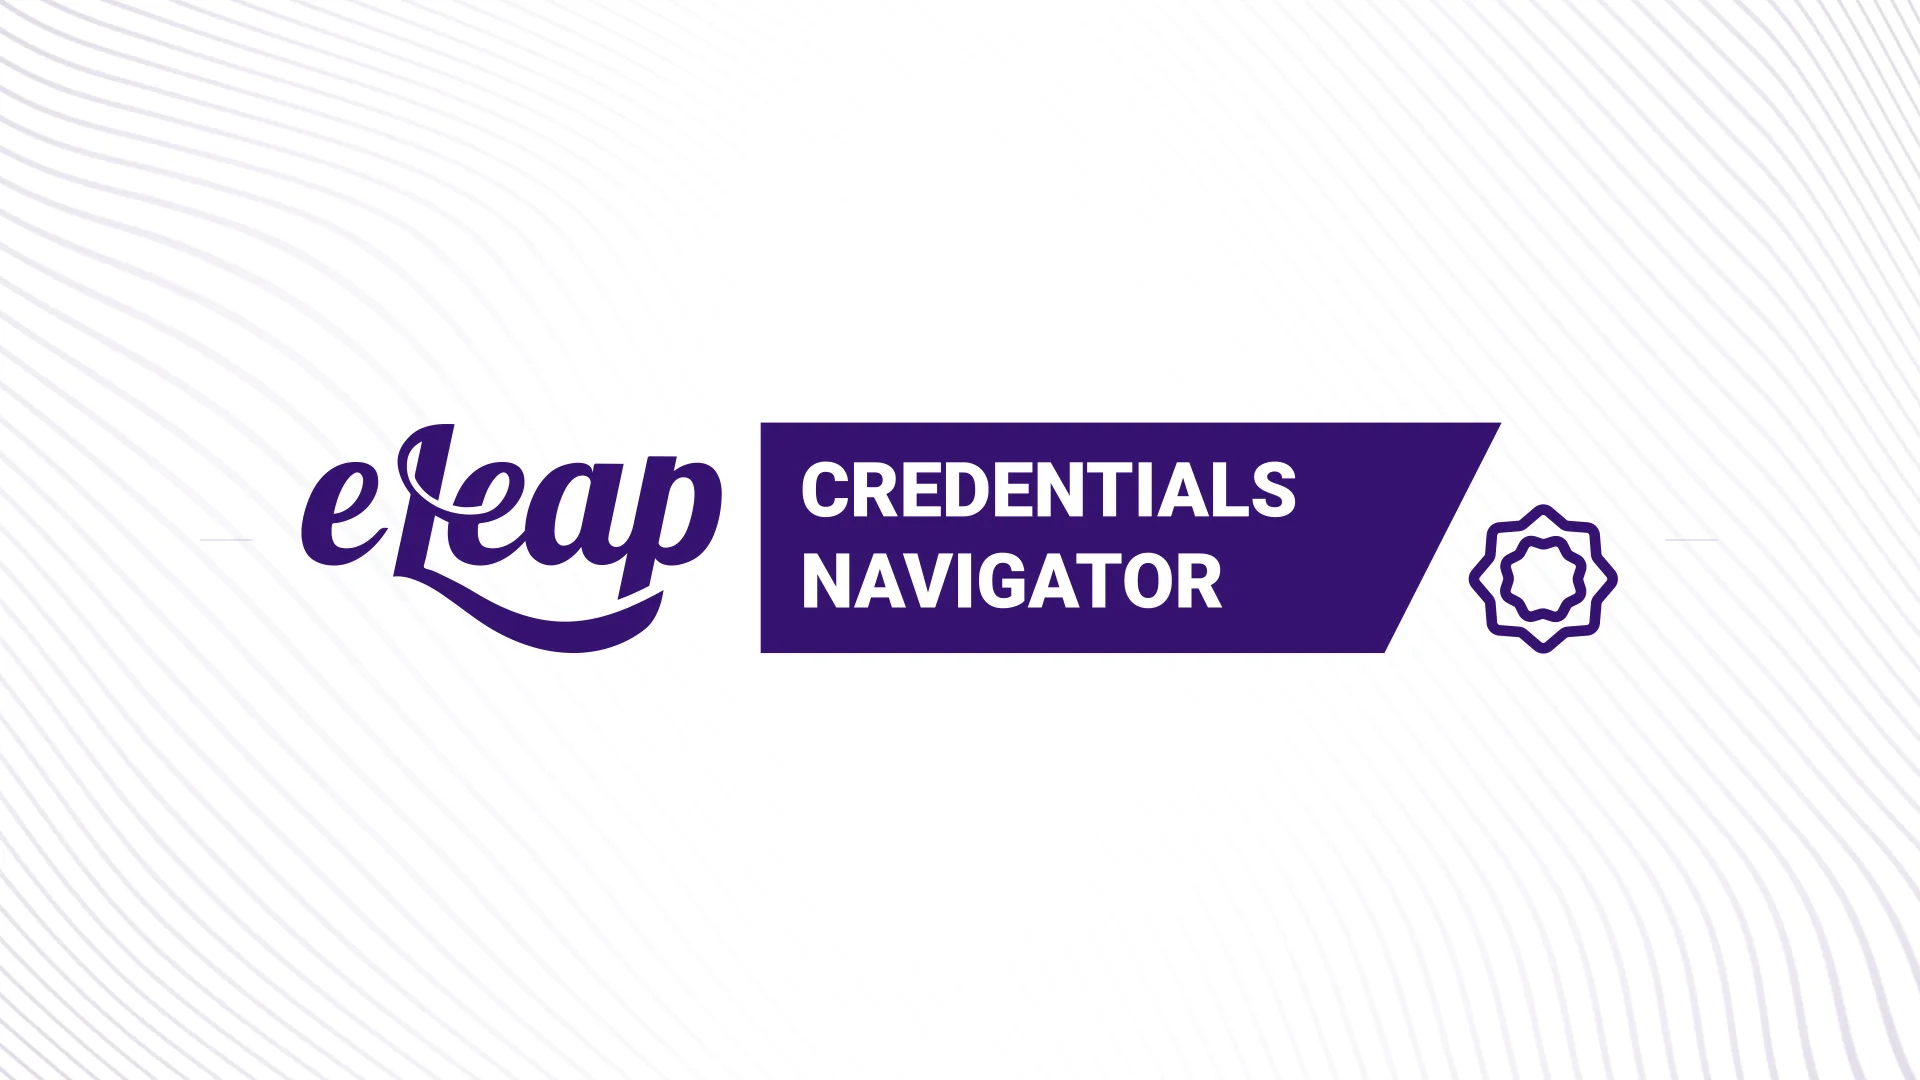 eLeaP Credentials Navigator